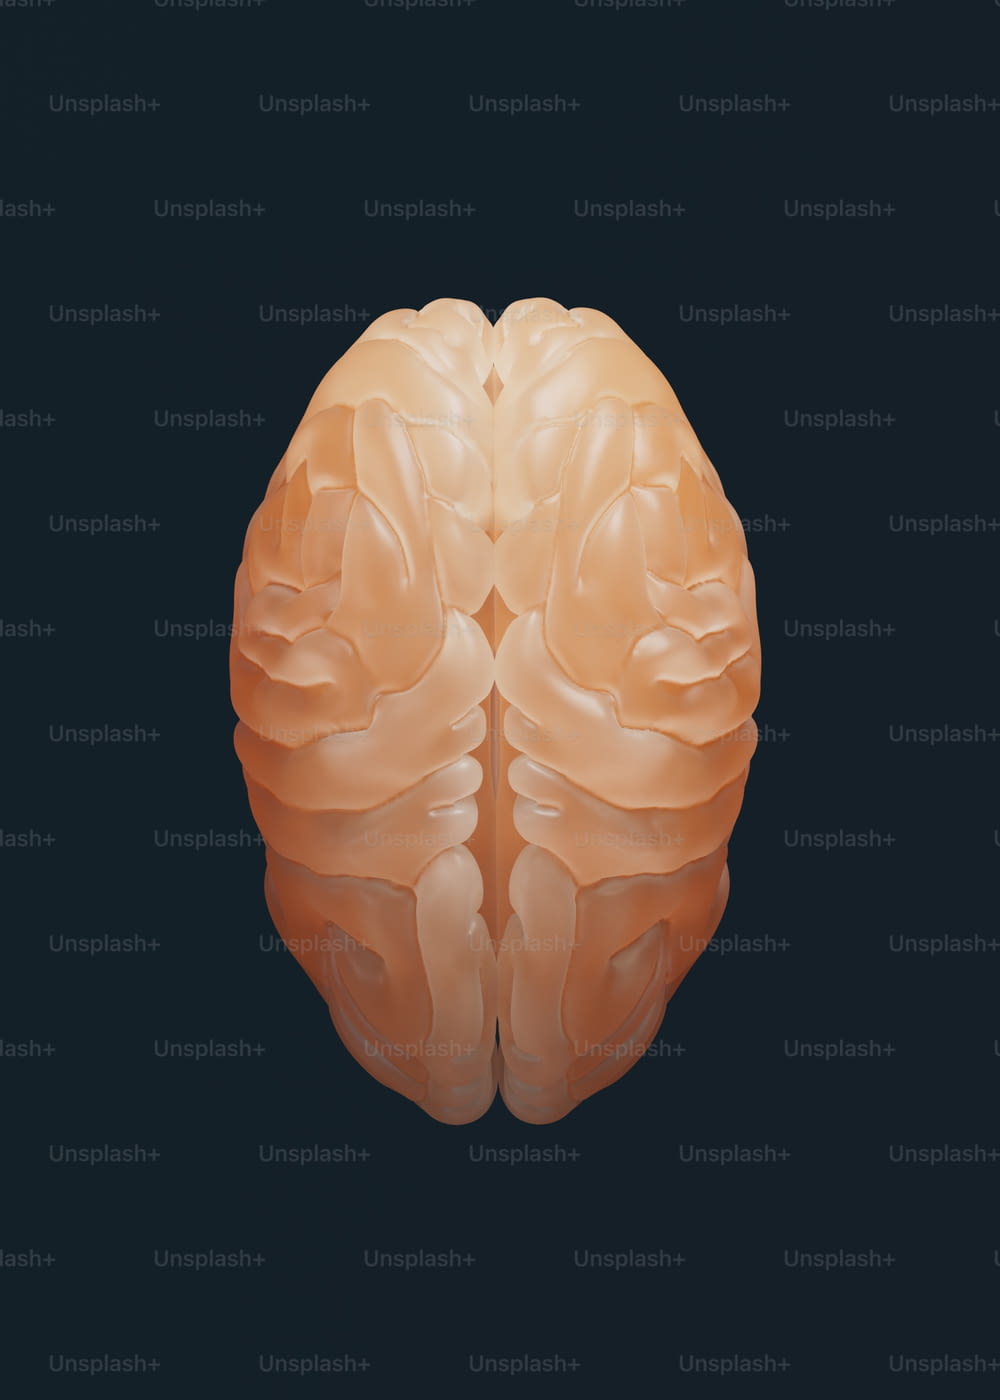 um close up de um cérebro humano em um fundo preto